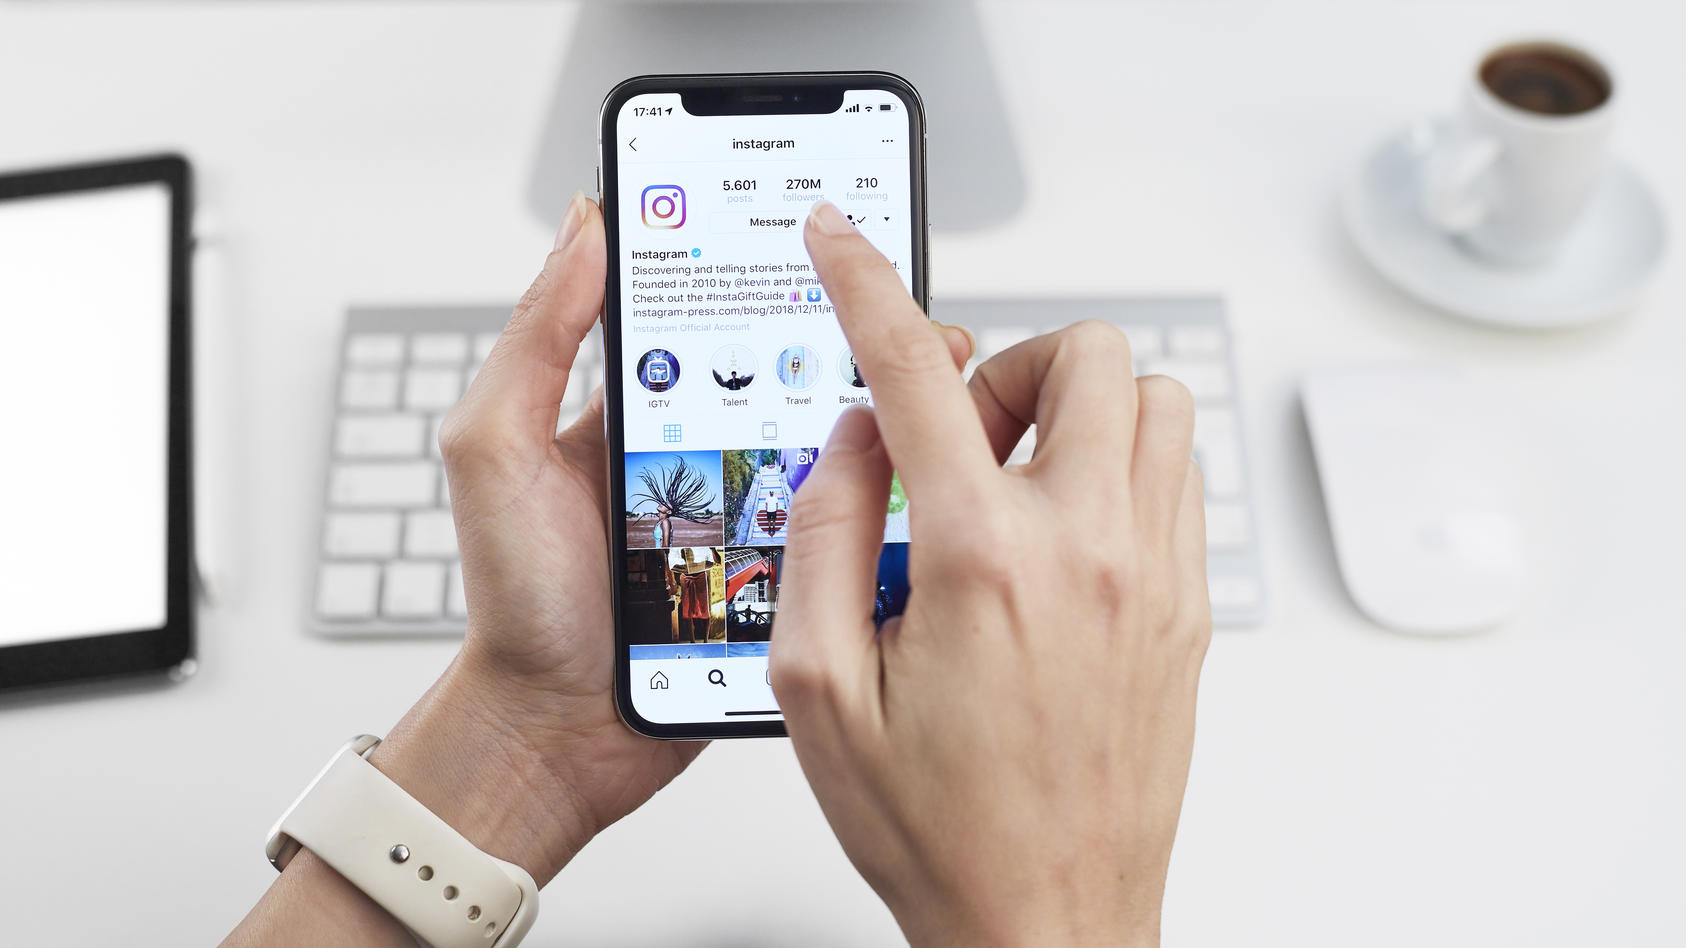 Ein Smartphone, auf dem ein Instagram-Profil zu sehen ist, liegt in den Händen einer Person.